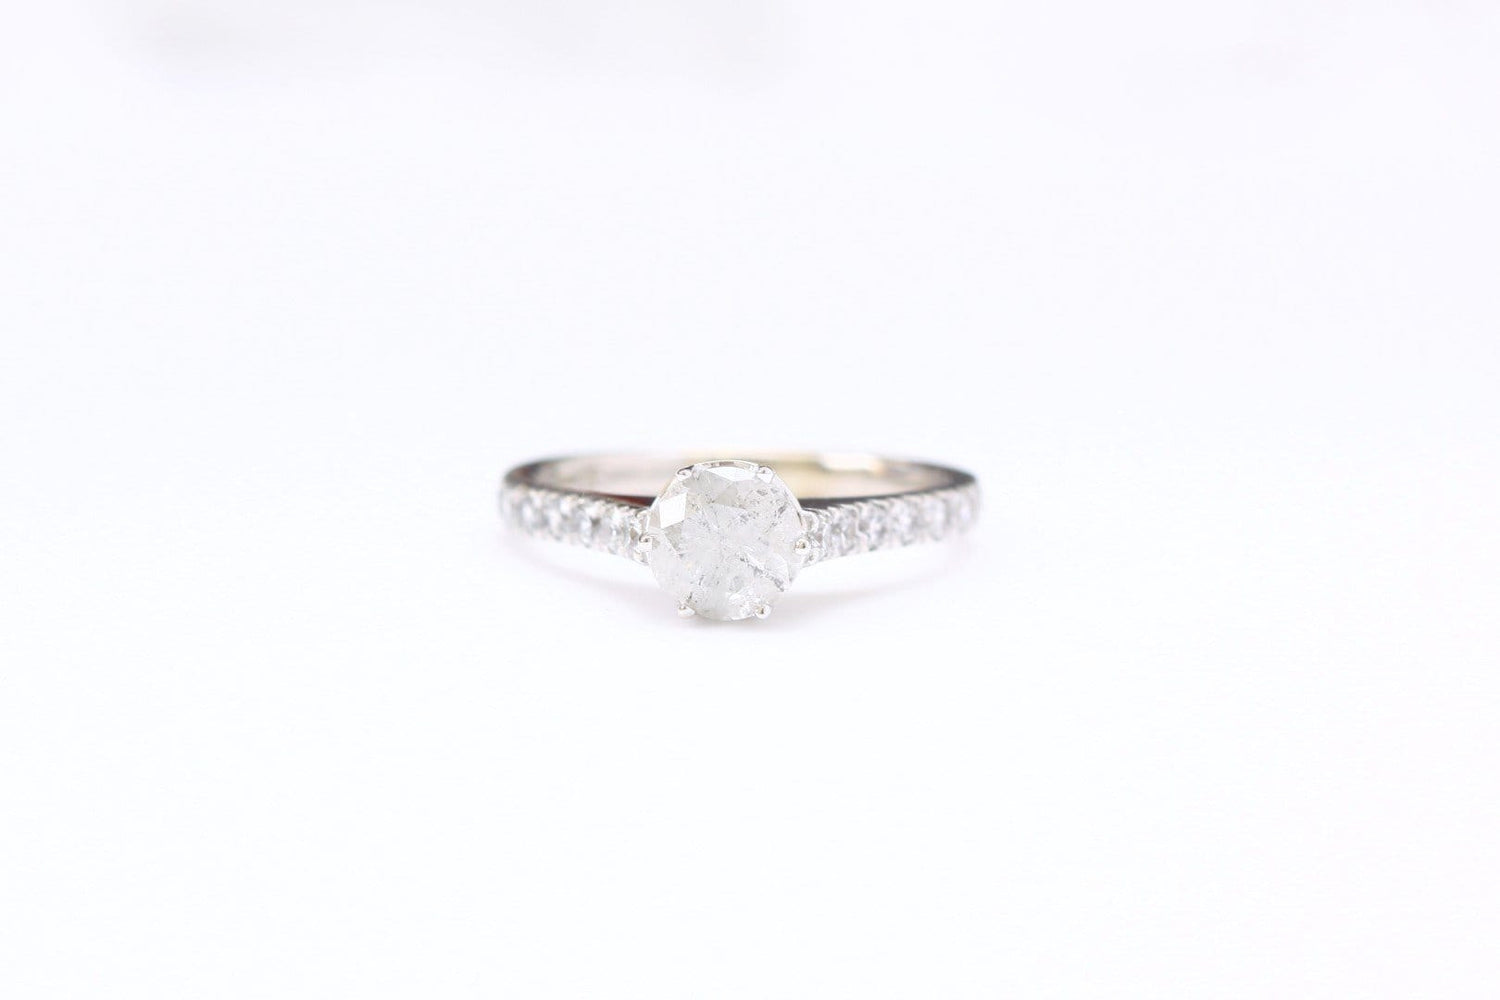 Salt and Pepper Diamond Engagement Ring - Vinny & Charles